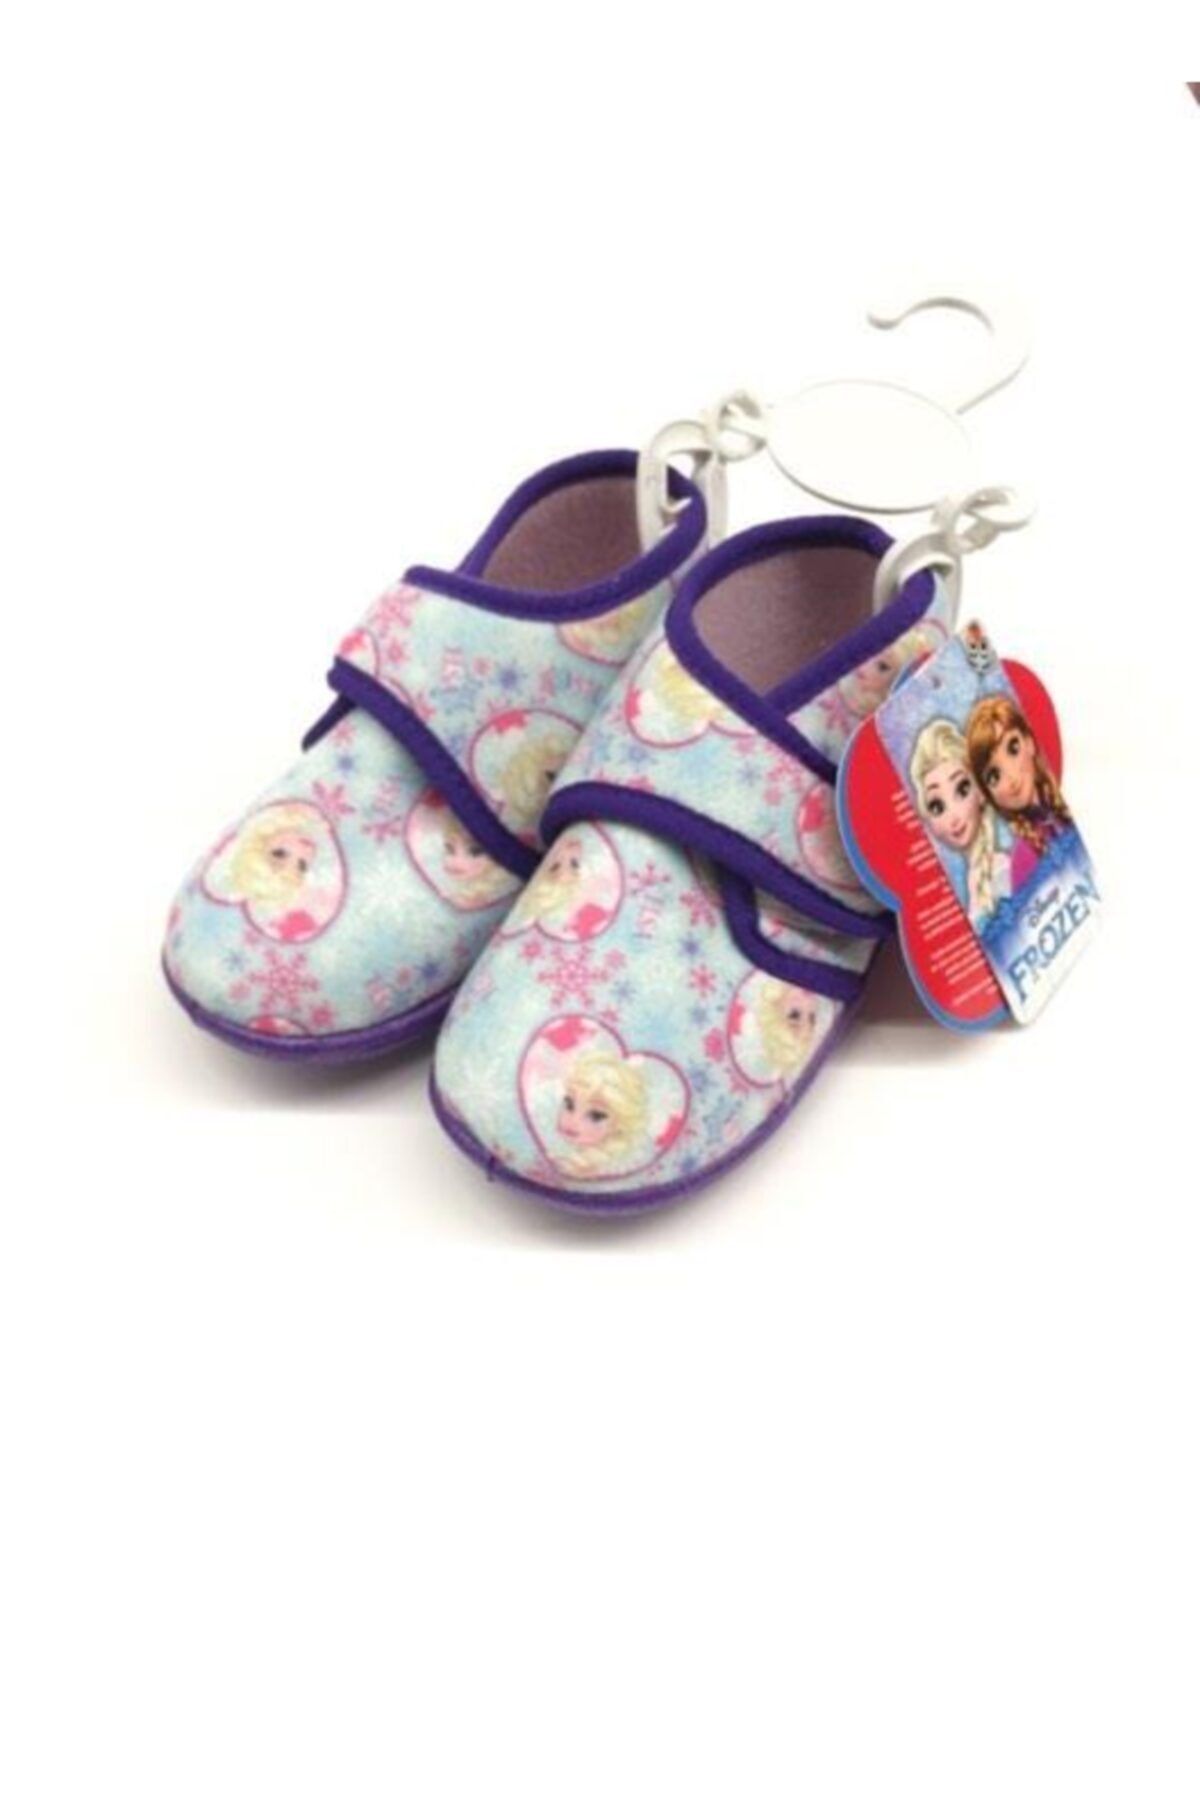 Hakan Çanta Frozen Lisanslı Panduf Çocuk Ayakkabısı 25 Numara